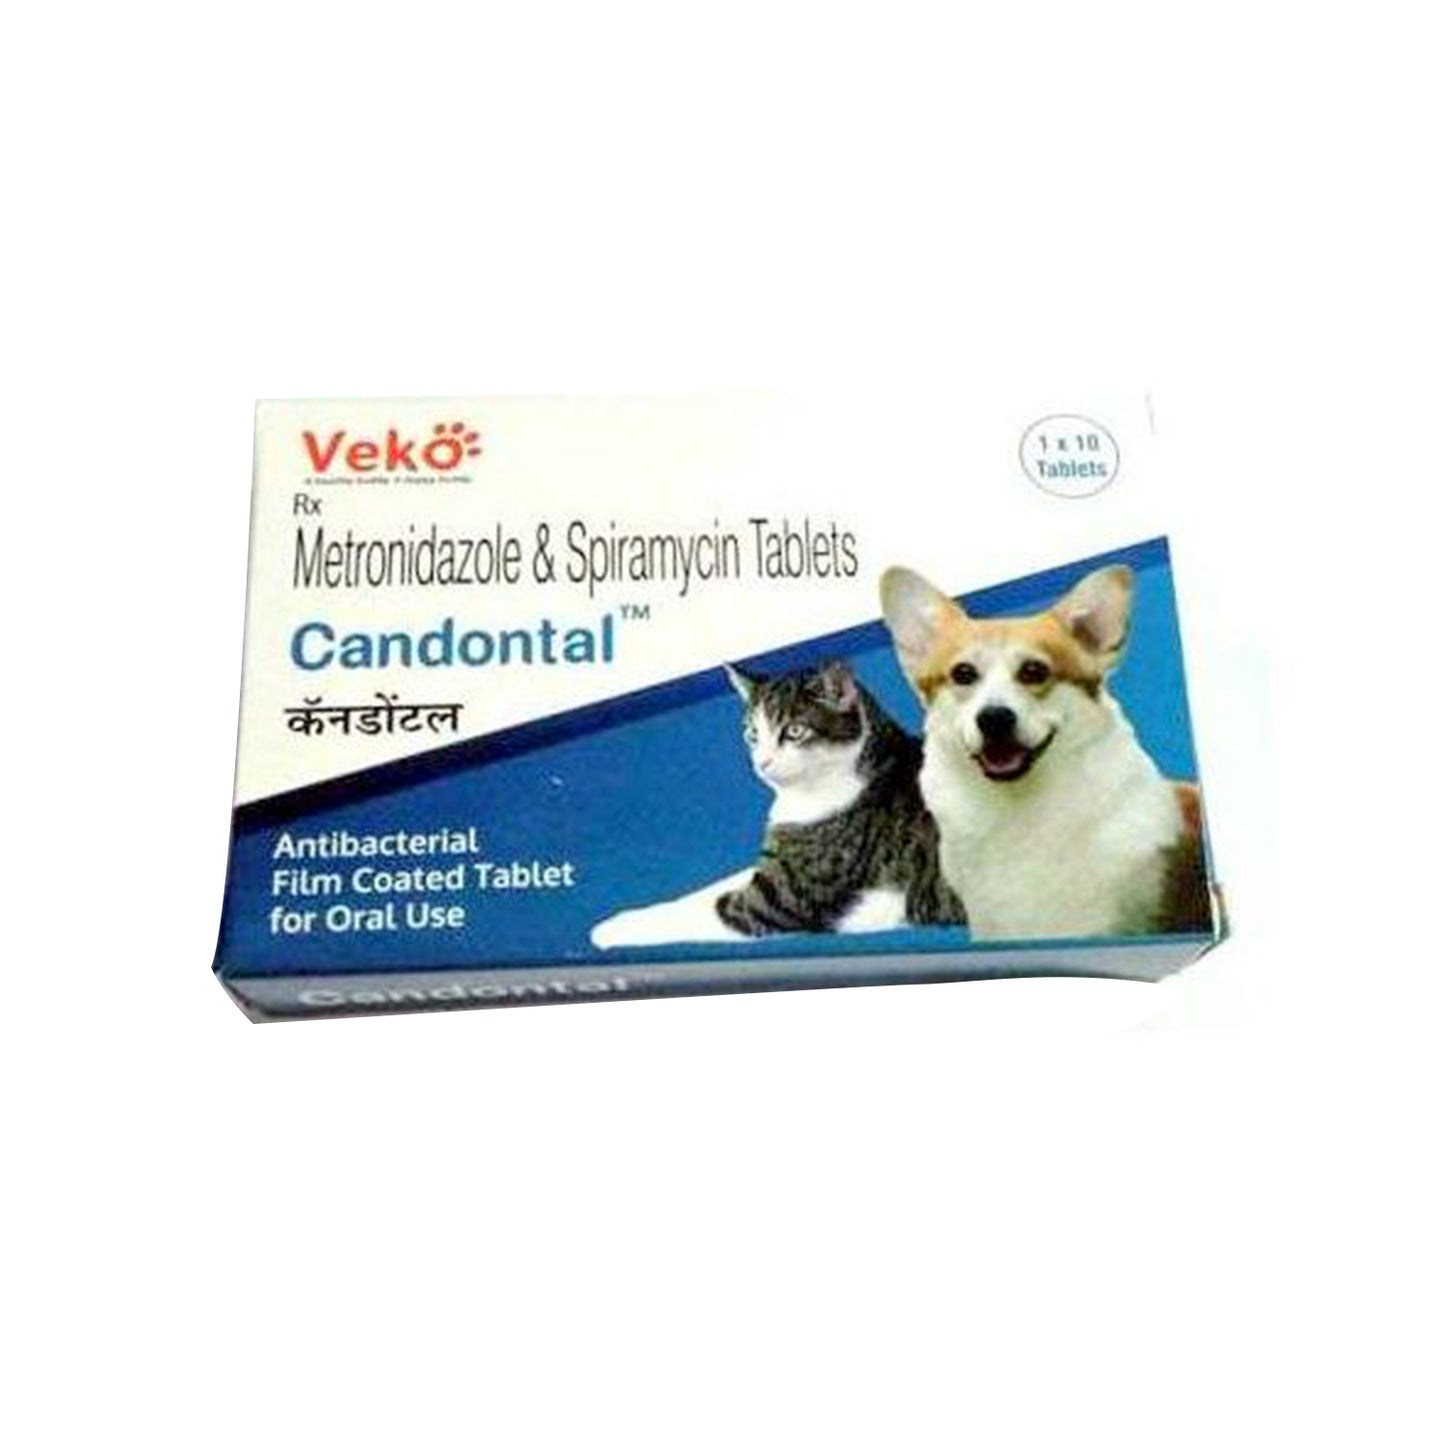 Veko Care - Candontal Tablets